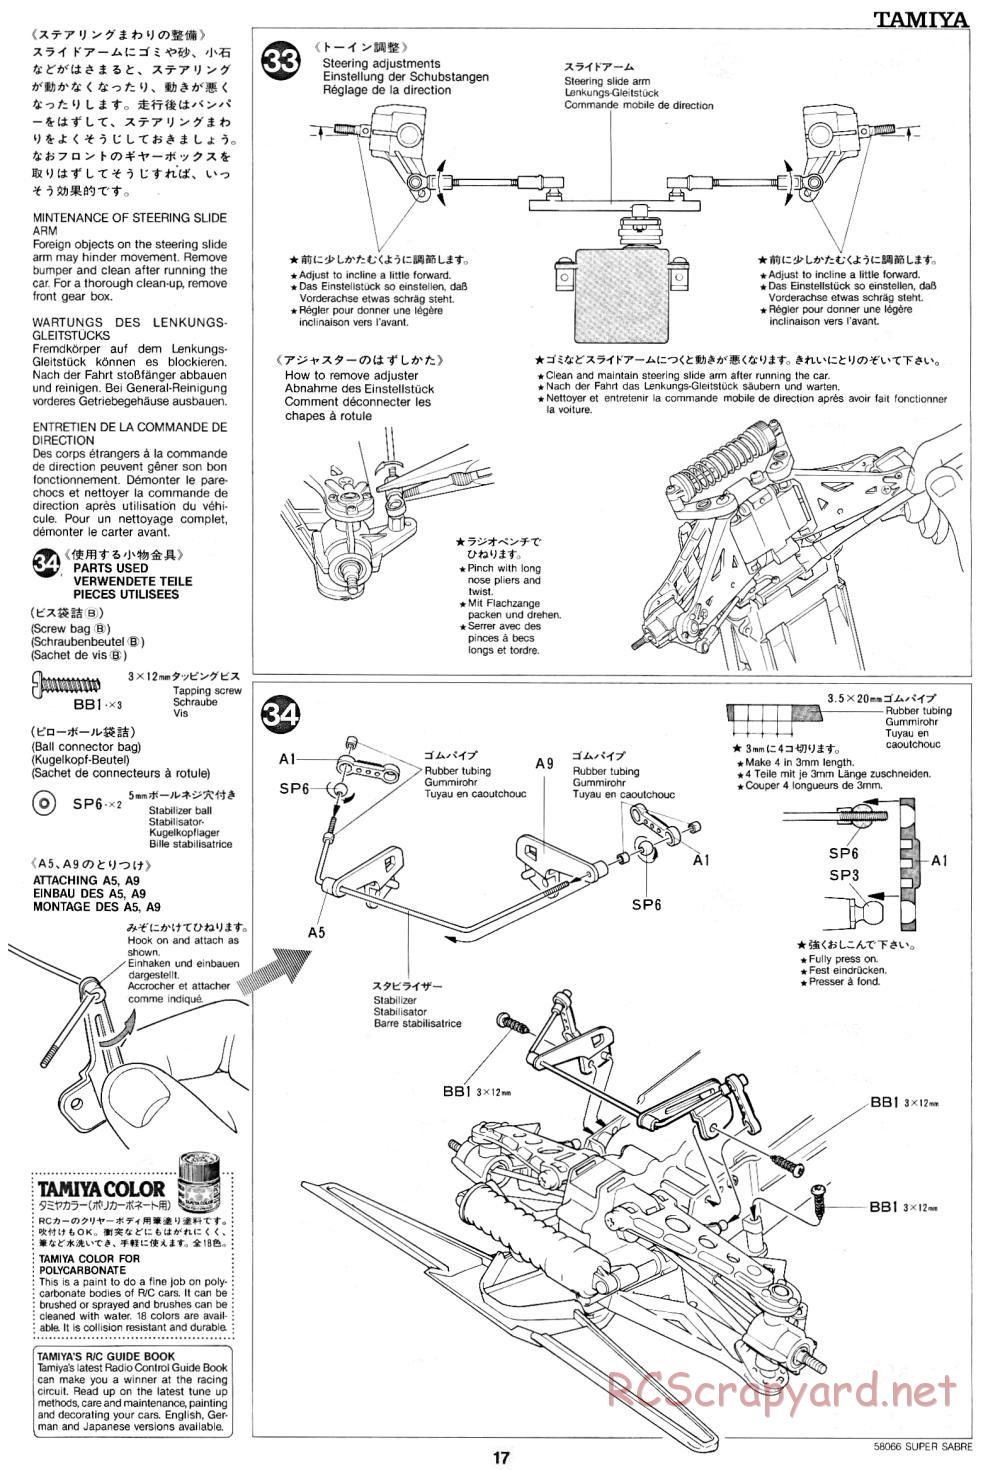 Tamiya - Super Sabre - 58066 - Manual - Page 17